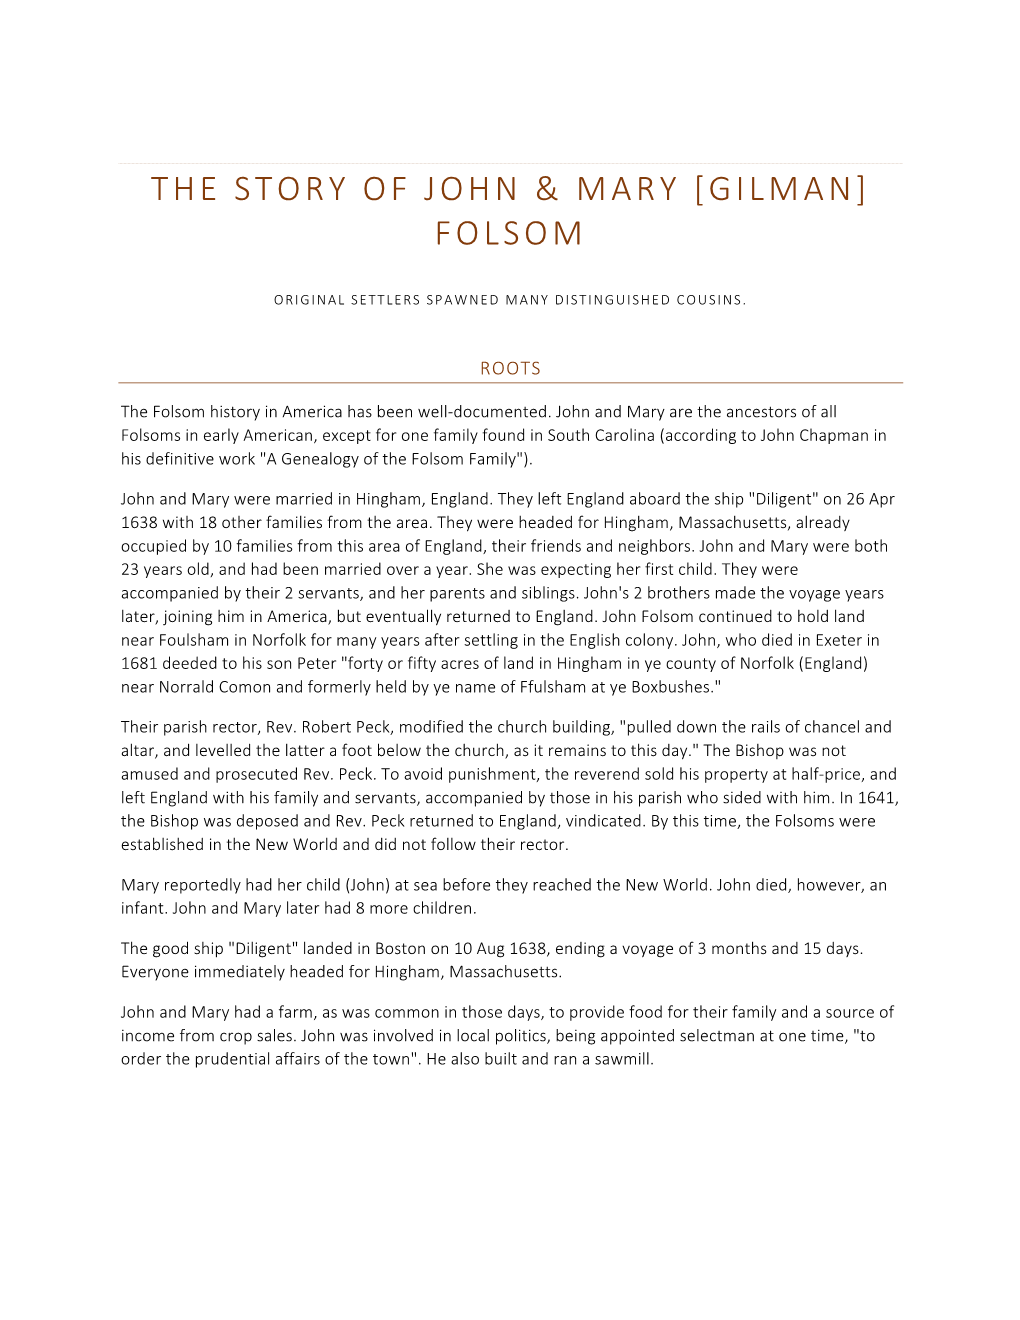 The Story of John & Mary Folsom